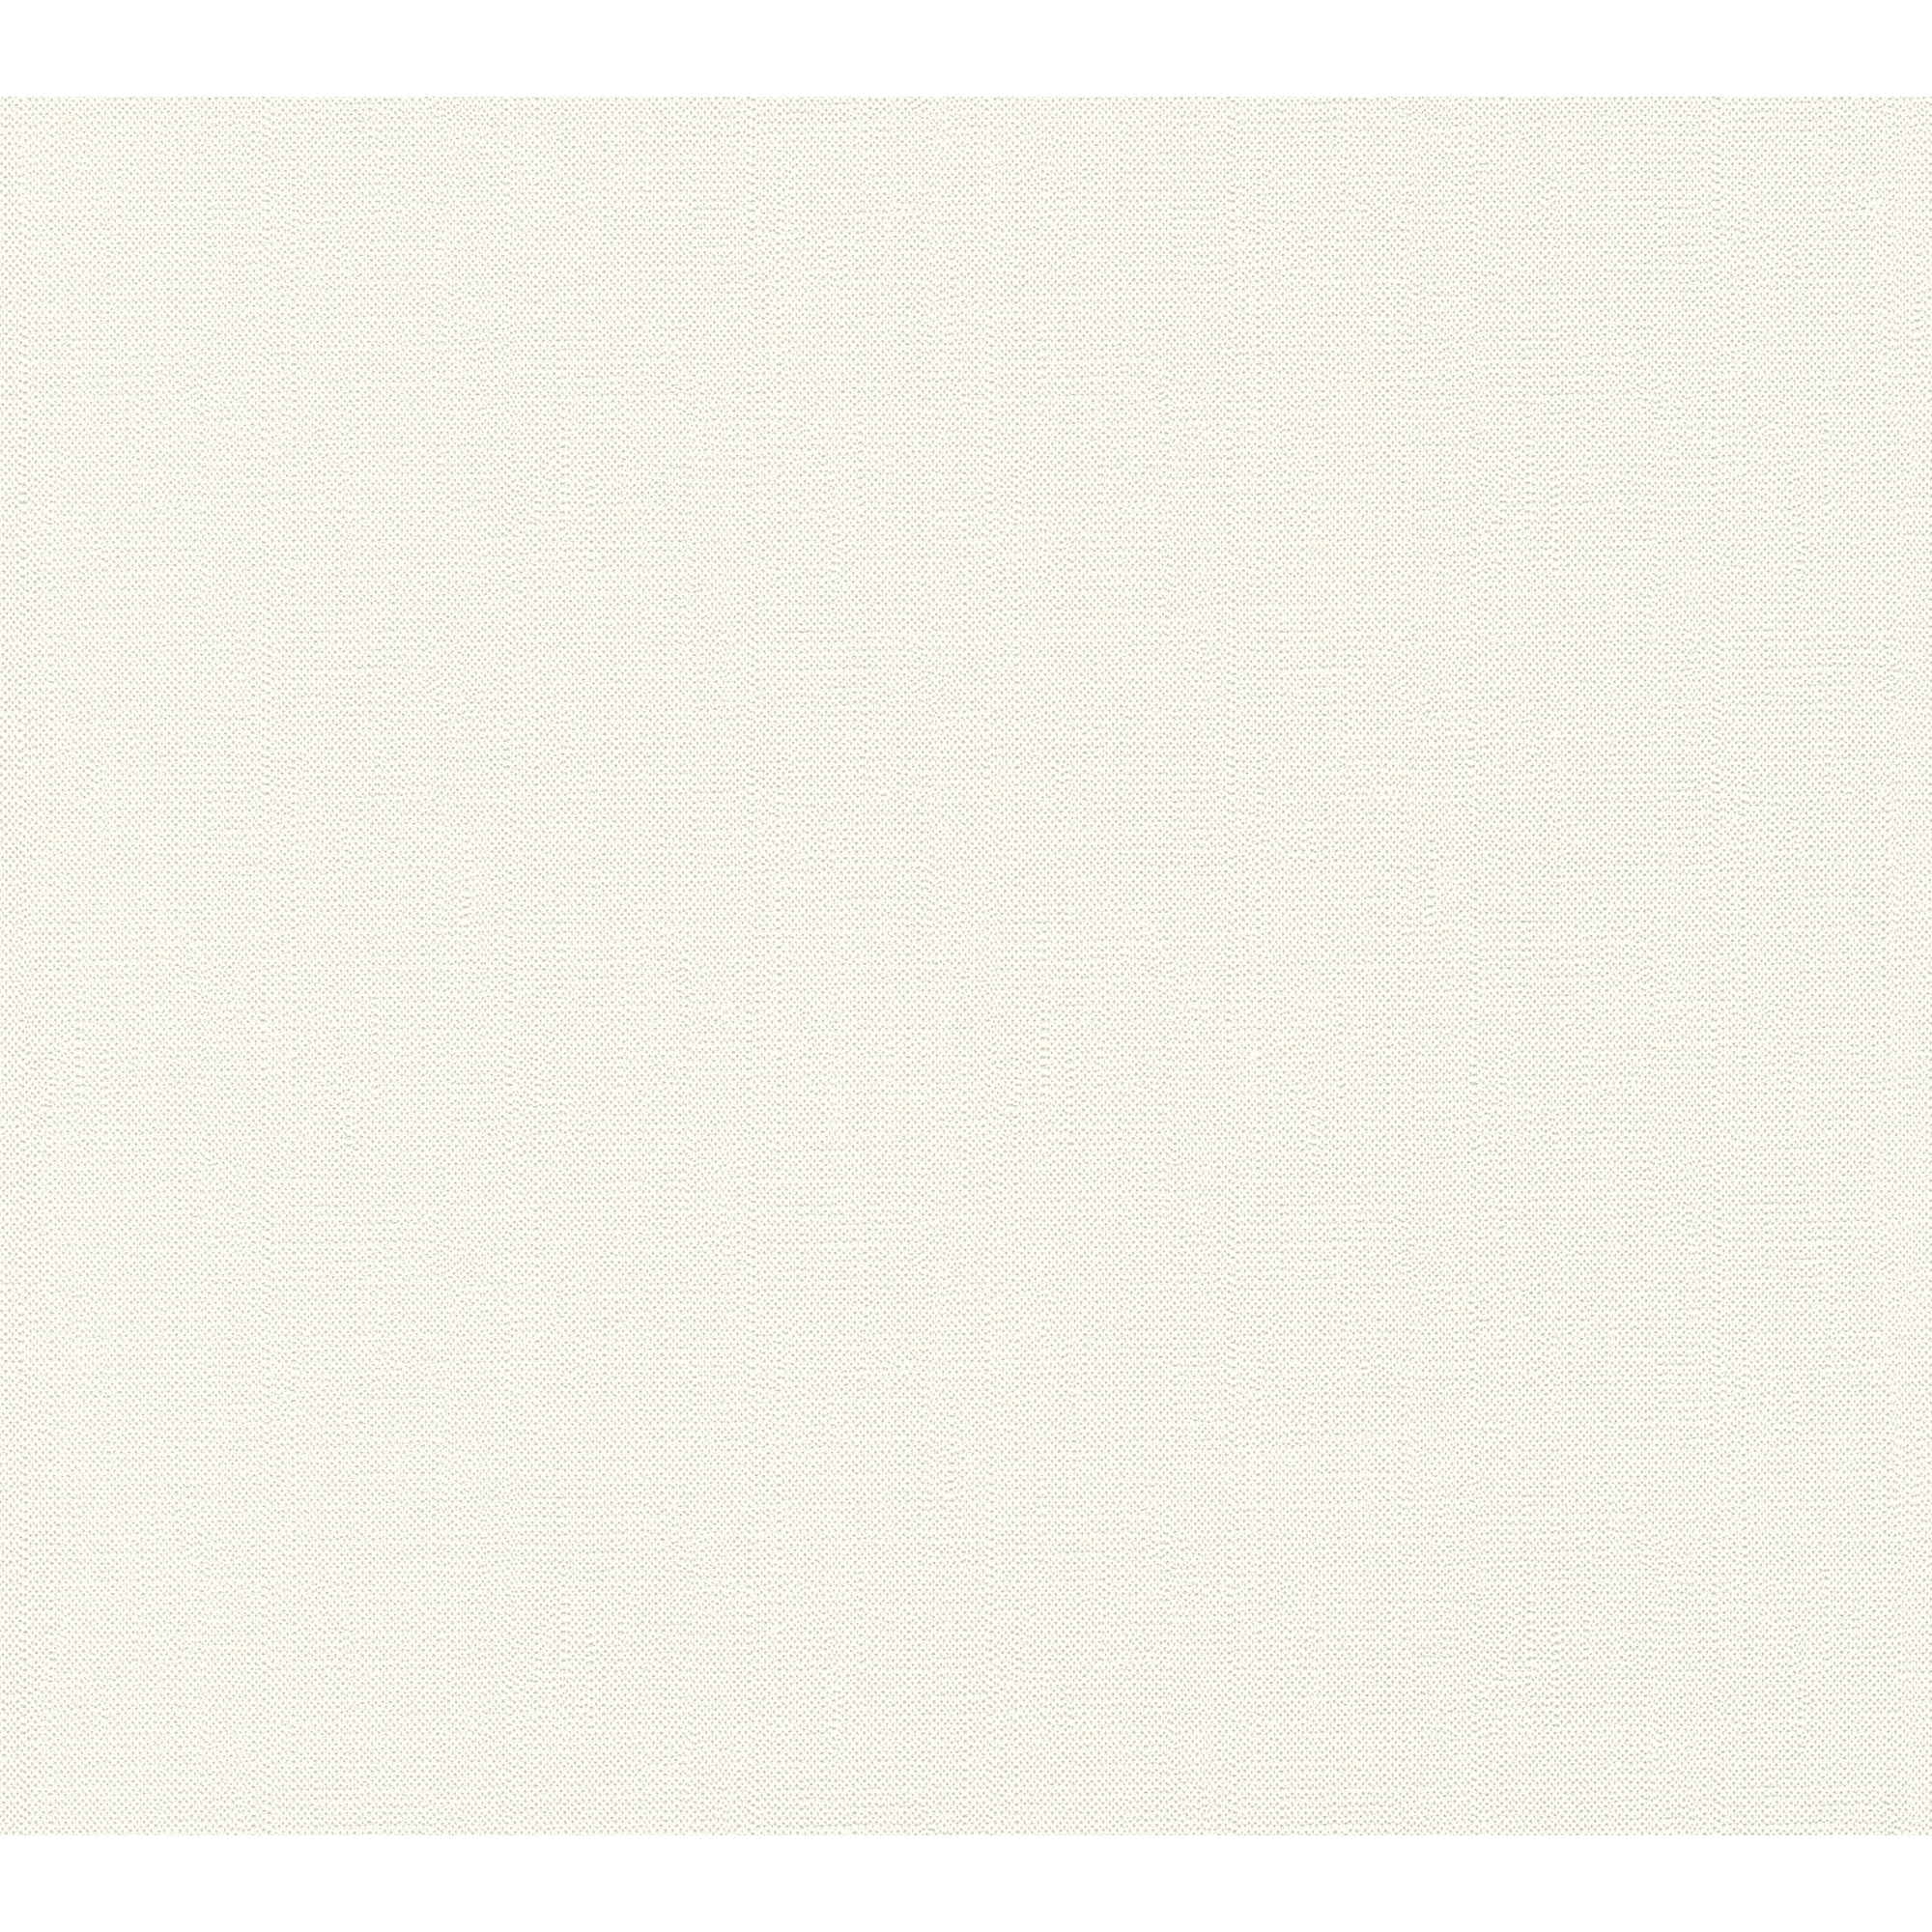 Vliestapete 'Shades of White' Uni Schaum weiß 10,05 x 0,53 m + product picture